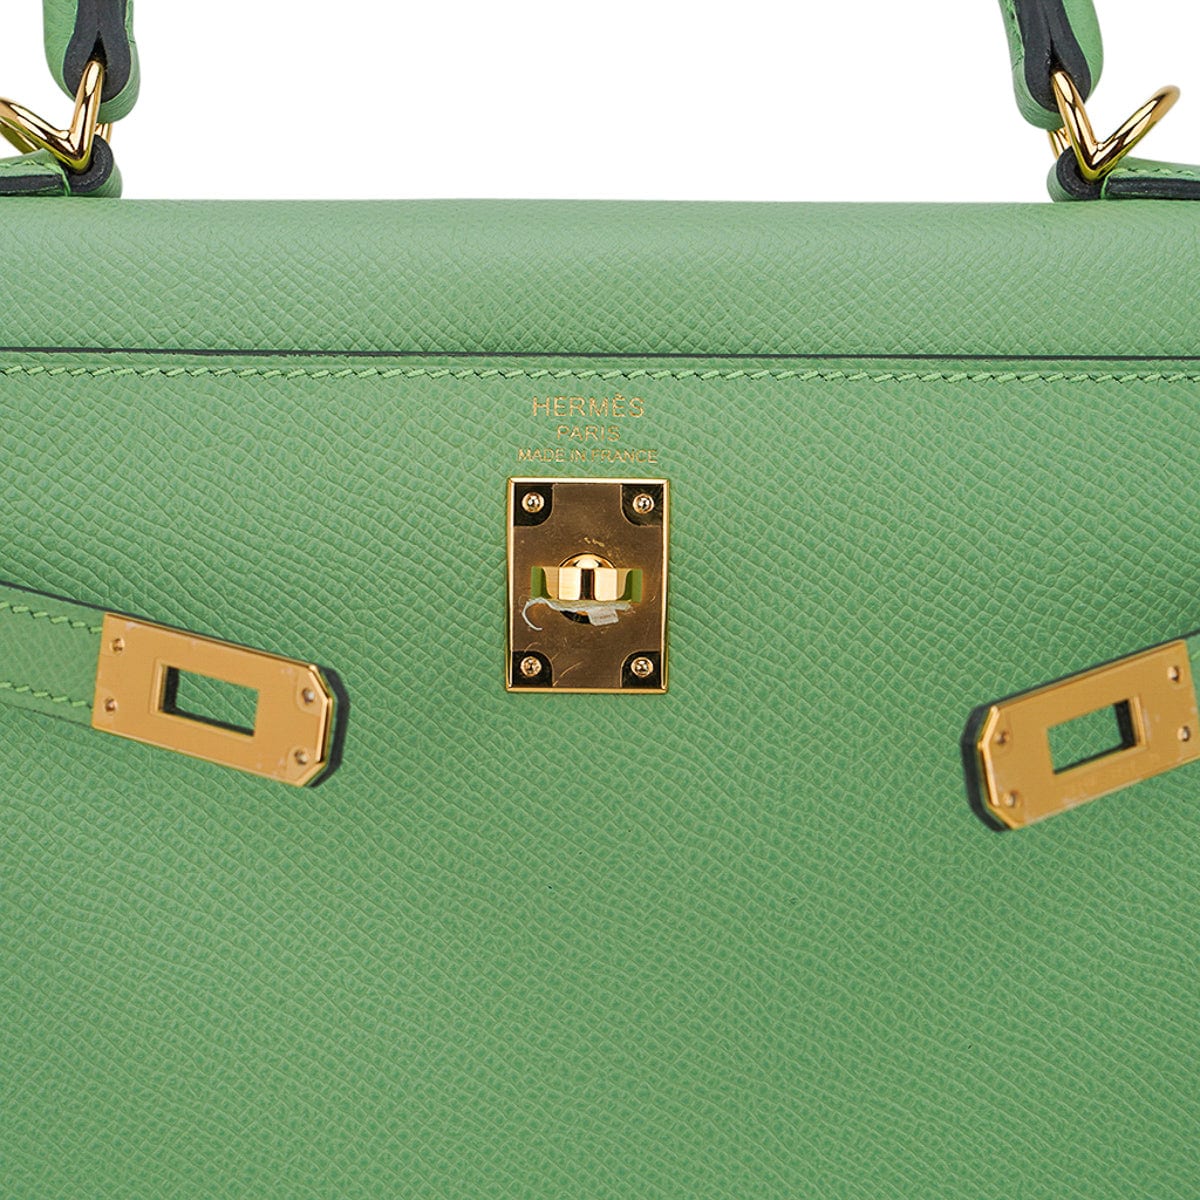 Vert Criquet Epsom Leather Sellier Birkin 25 Palladium Hardware, 2020, Handbags & Accessories, 2021